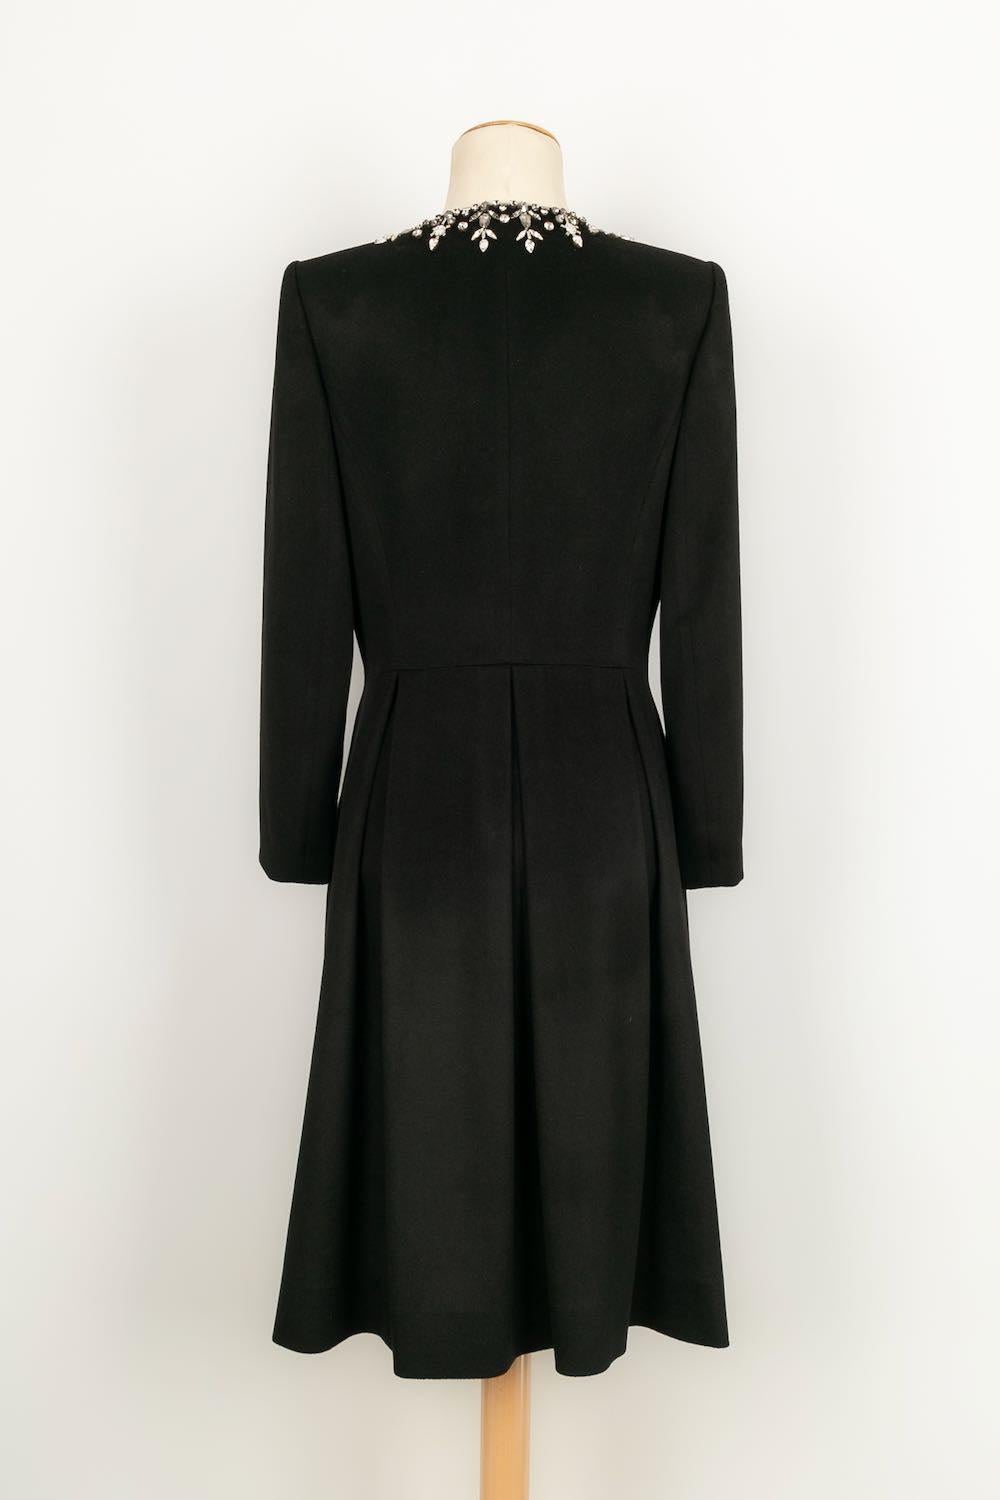 Noir Azzaro - Veste longue en cachemire noir, taille 40FR en vente